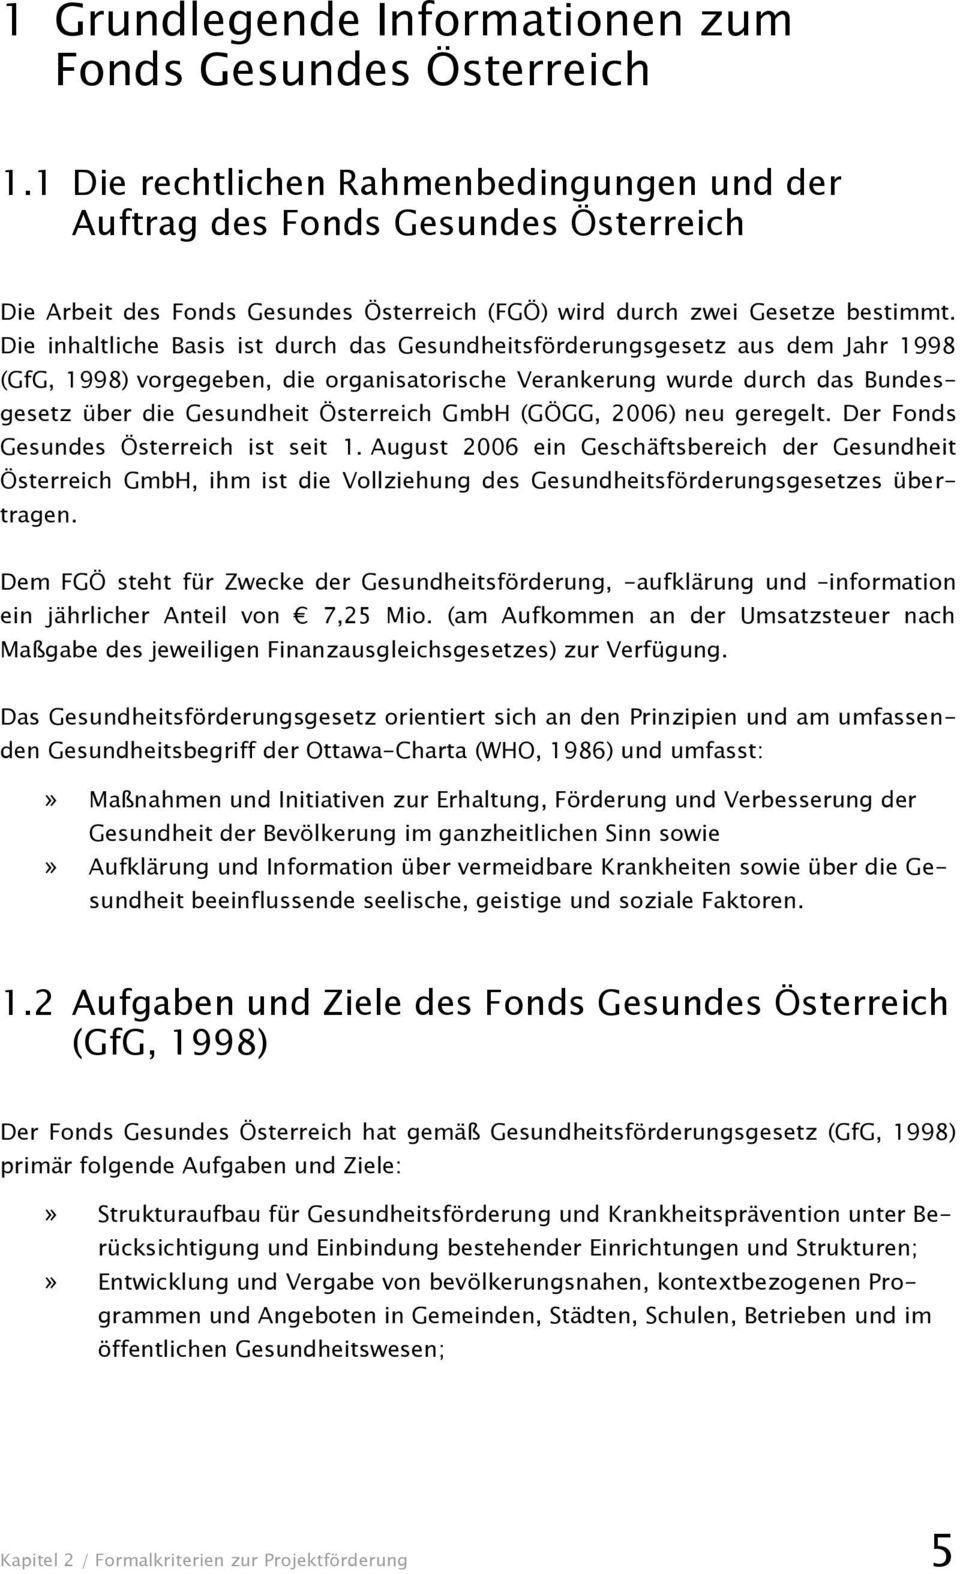 Die inhaltliche Basis ist durch das Gesundheitsförderungsgesetz aus dem Jahr 1998 (GfG, 1998) vorgegeben, die organisatorische Verankerung wurde durch das Bundesgesetz über die Gesundheit Österreich